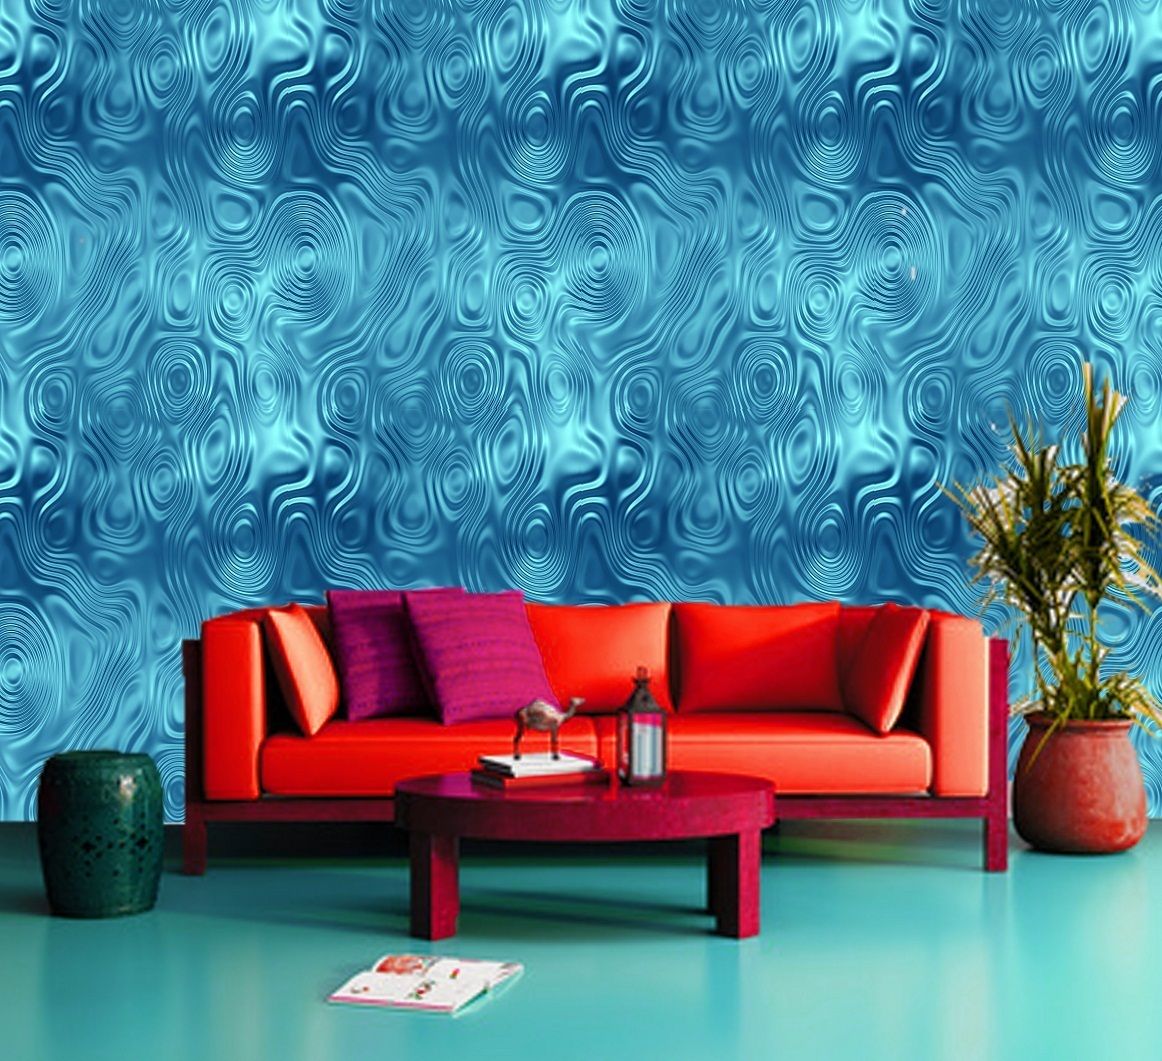 Climax Sea Ocean Blue 3d Wallpaper Wall Mural Decor Photo